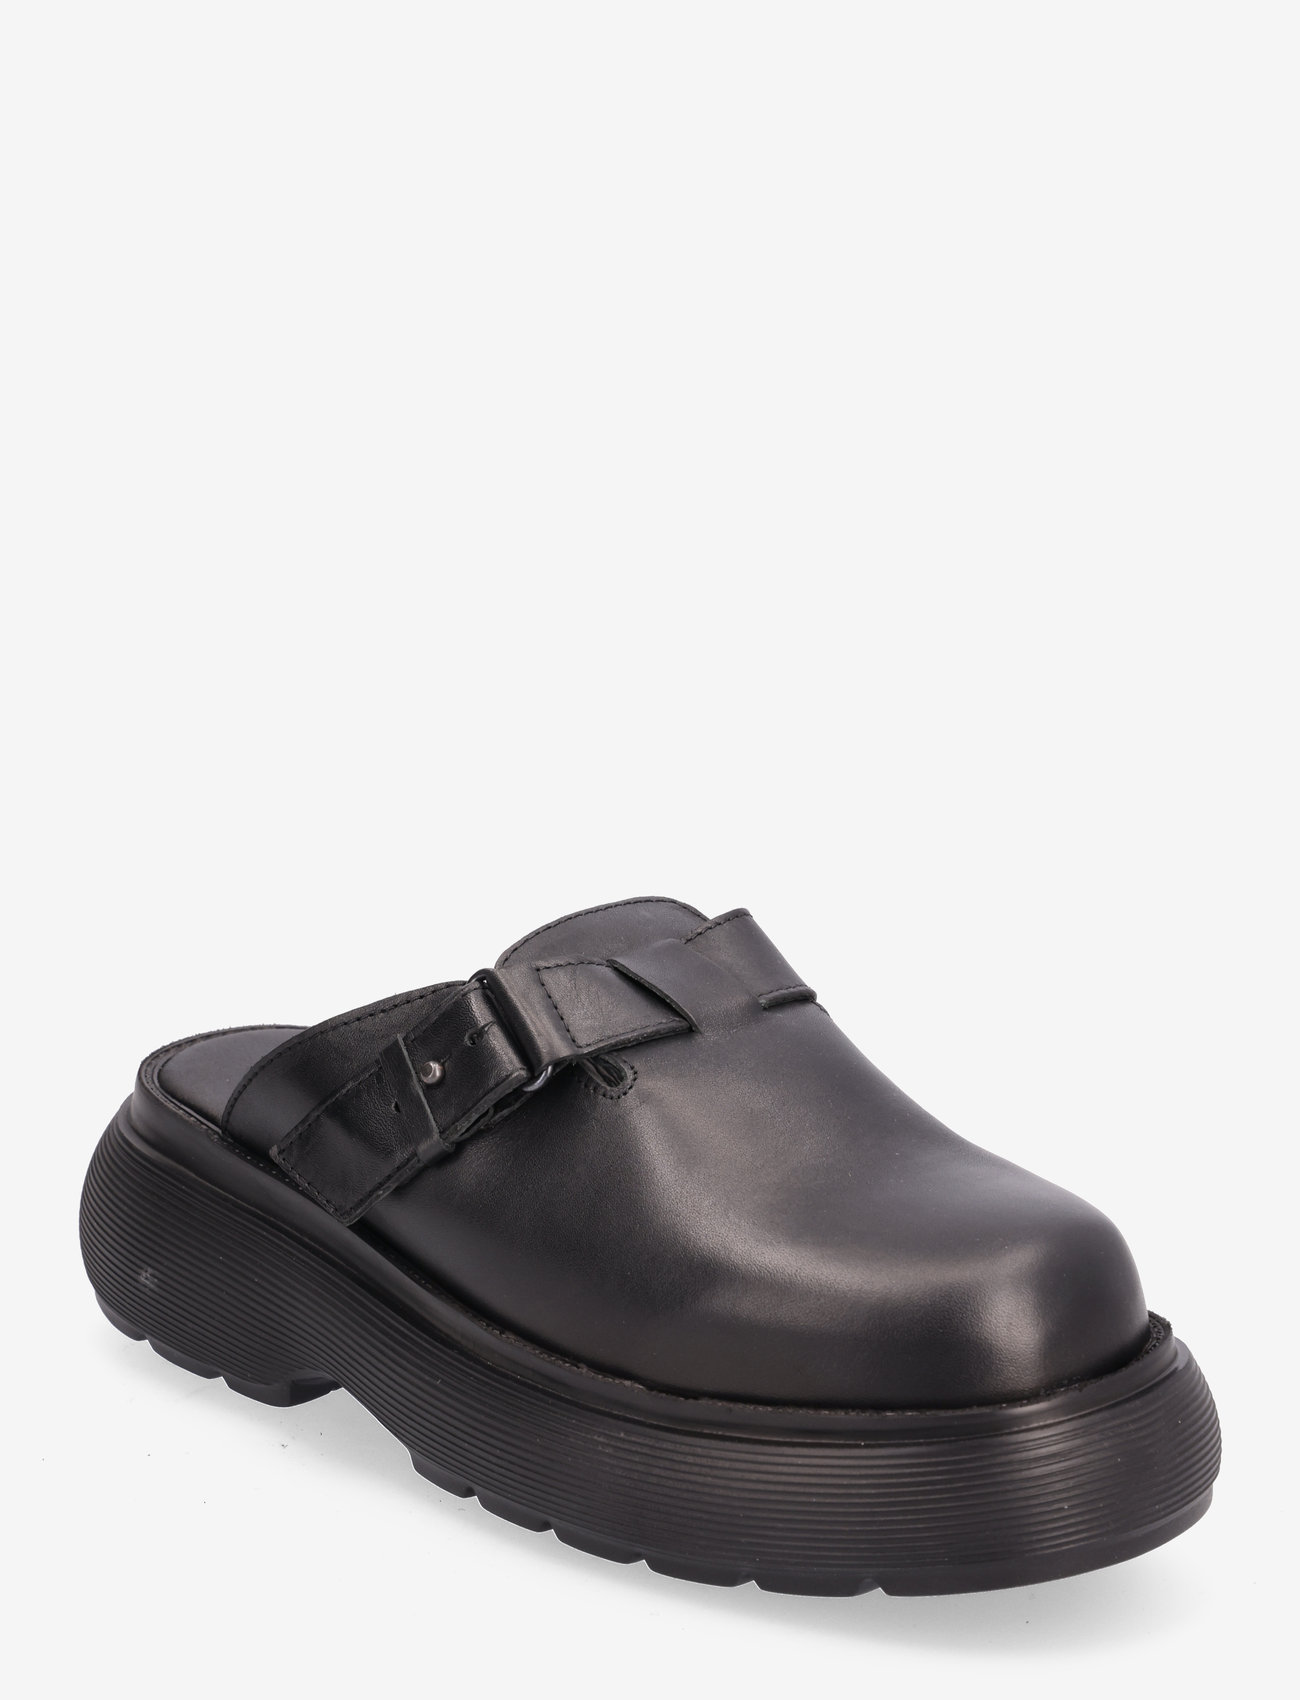 Garment Project - Cloud Clog - Black Leather - kontsata muula-stiilid jalanõud - black - 0